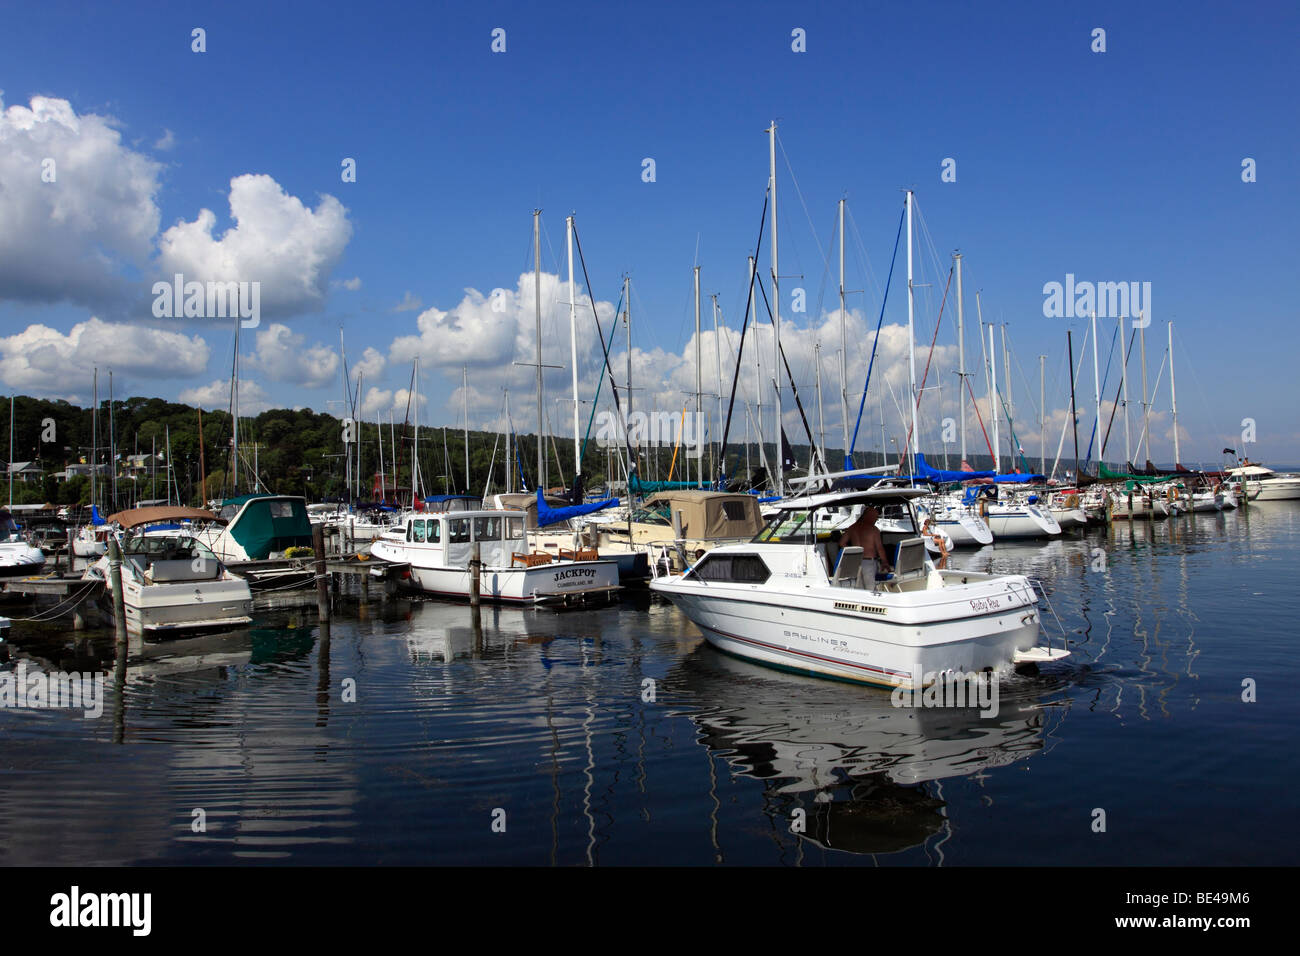 Marina and harbor on Seneca Lake, Watkins Glen, NY Stock Photo